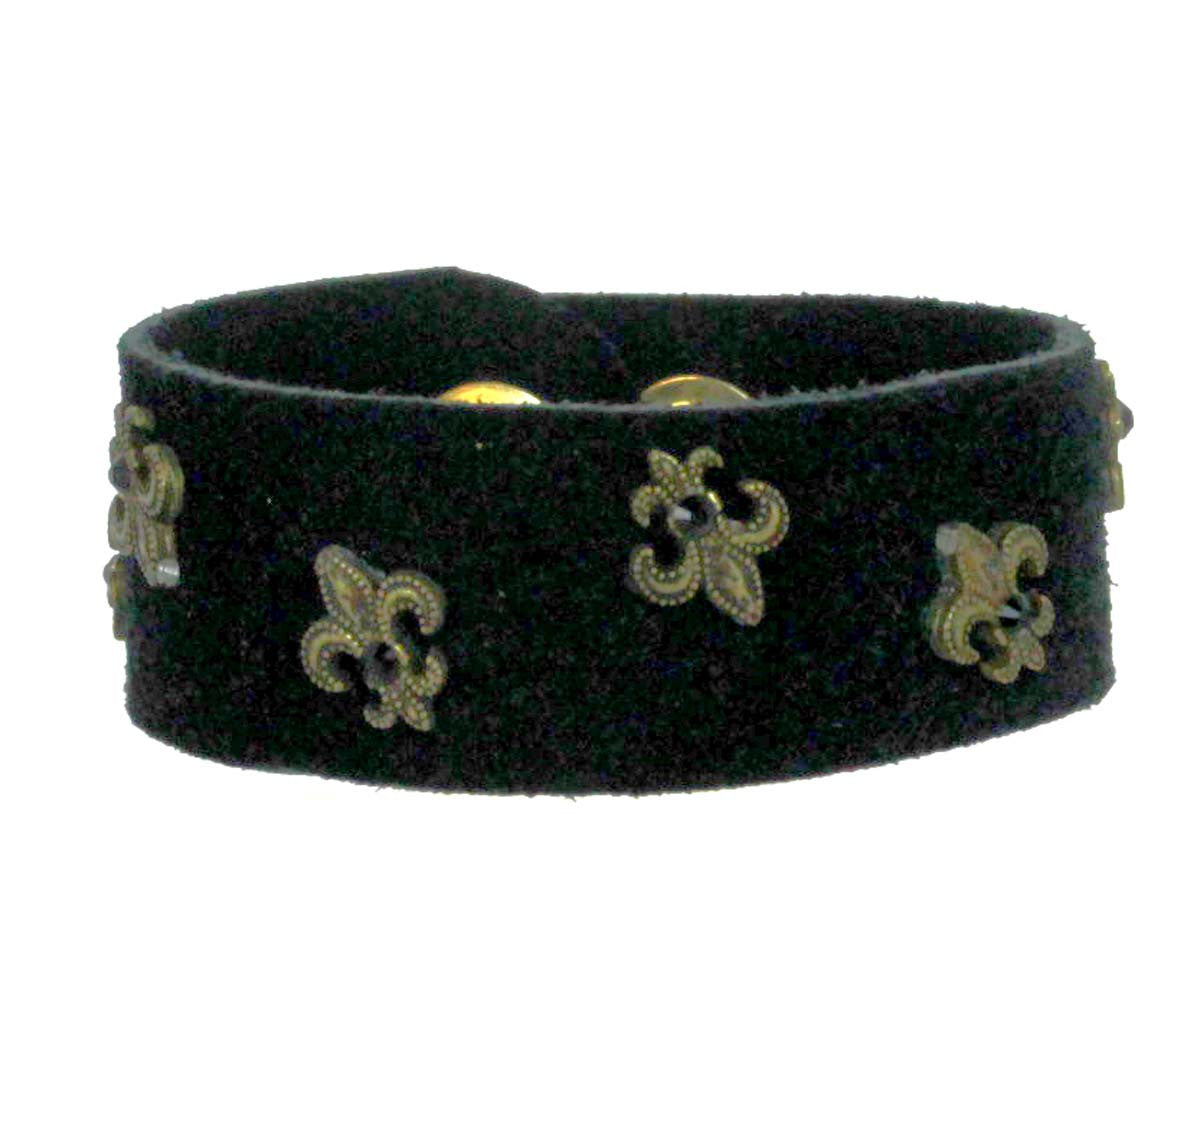 Fleur De Lis Leather Bracelet 1" Black Suede